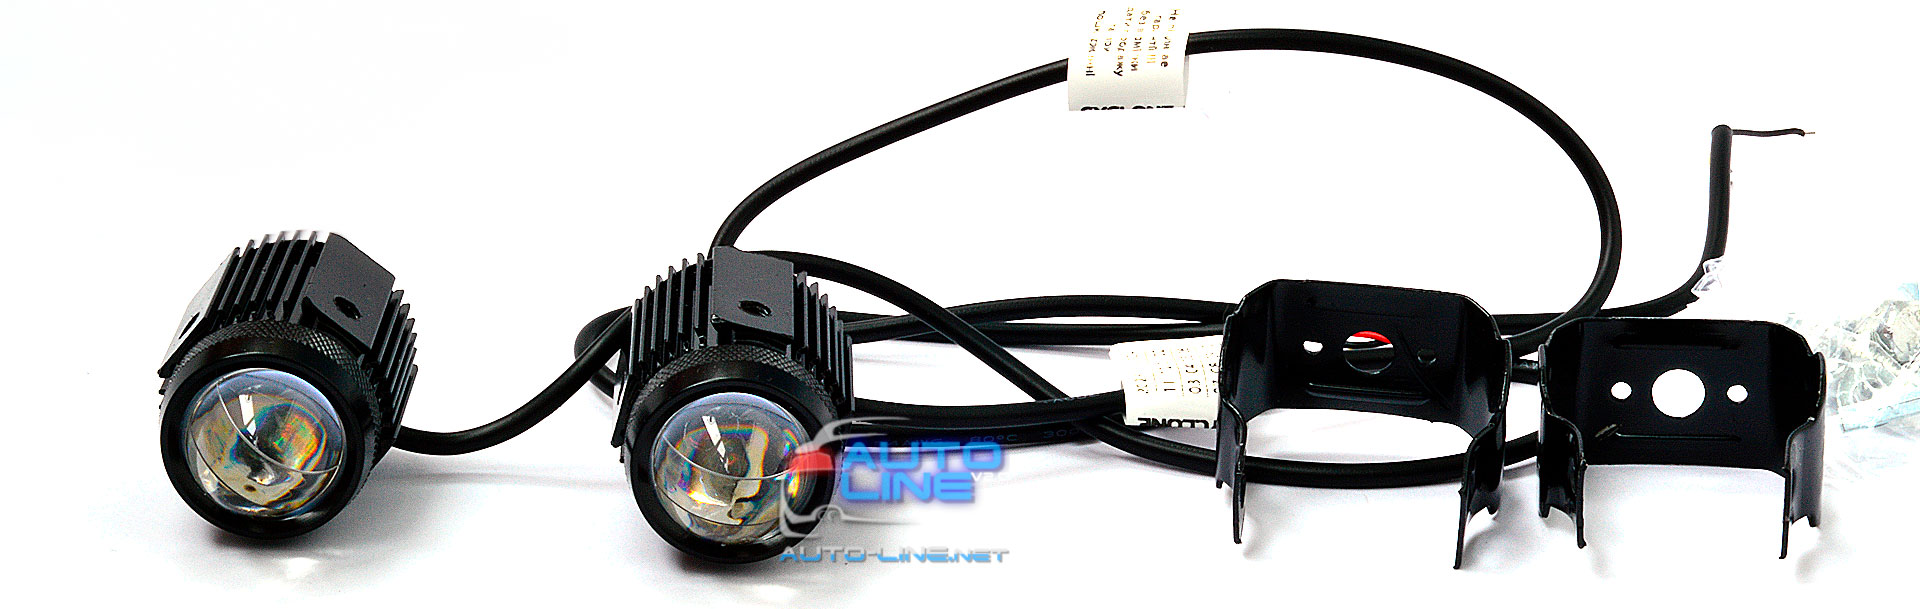 CYCLONE LED MF-01 - миниатюрные LED-линзы ближнего света и противотуманные фары